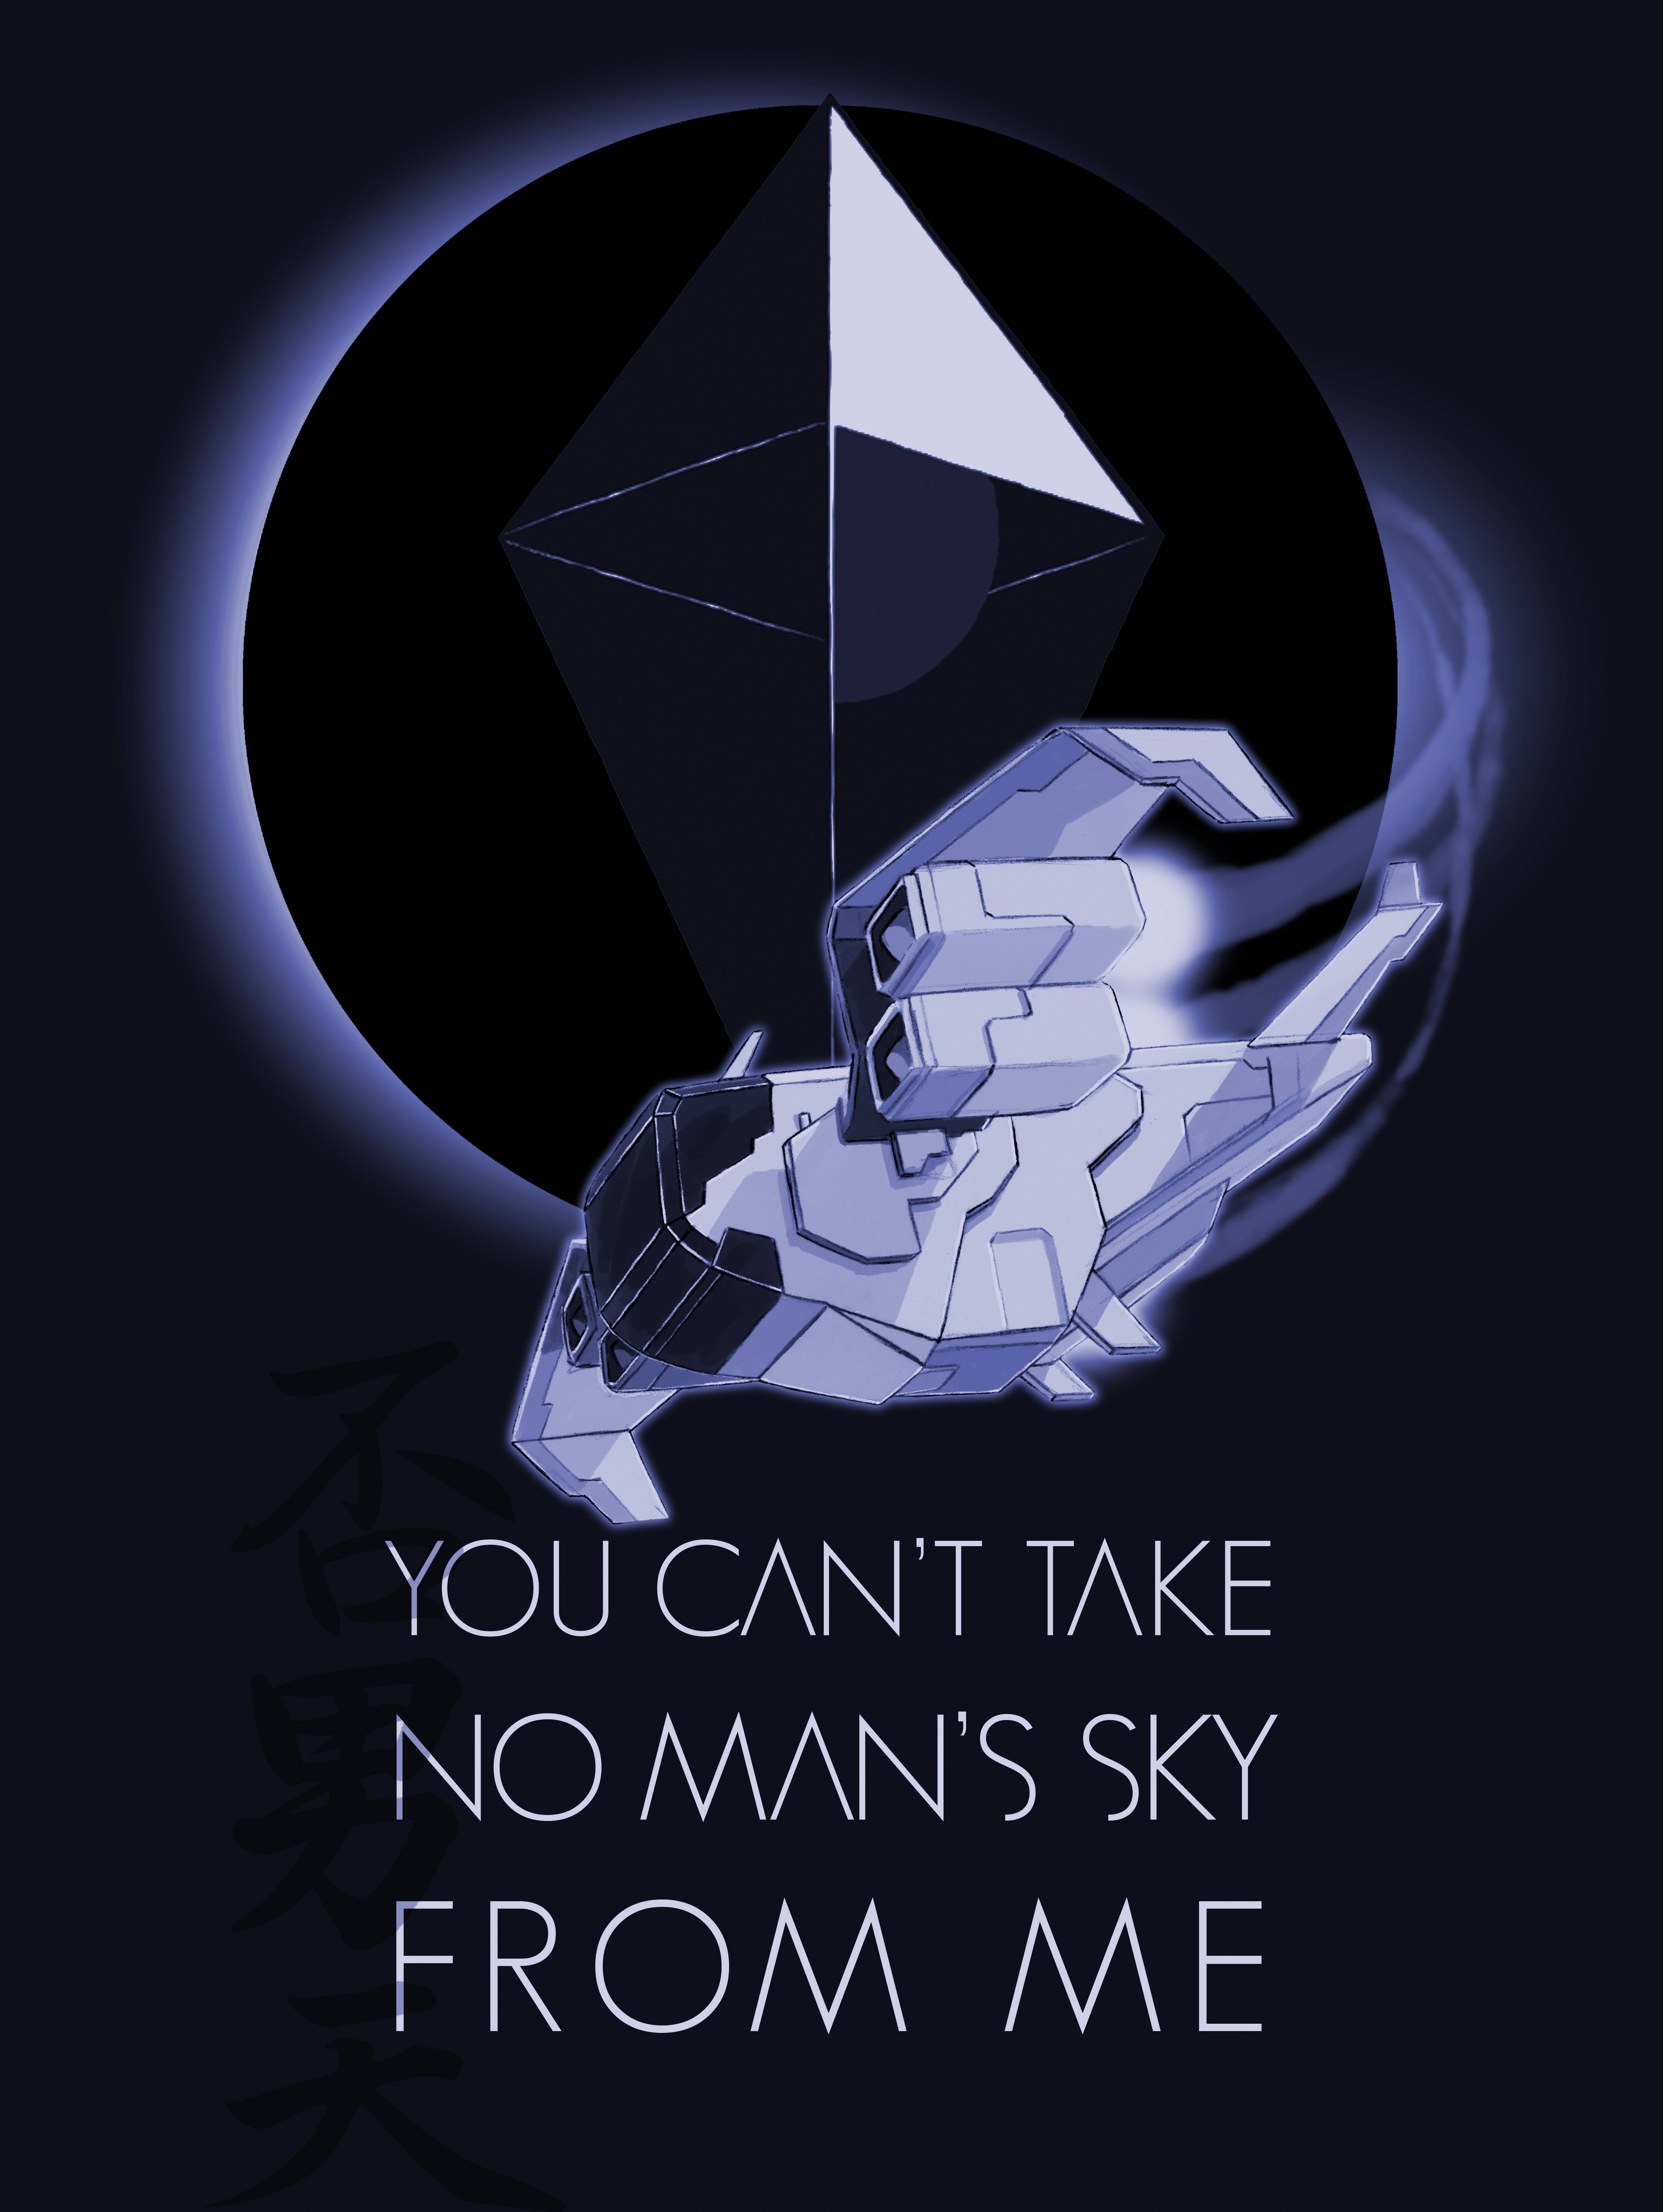 No Man's Sky Art